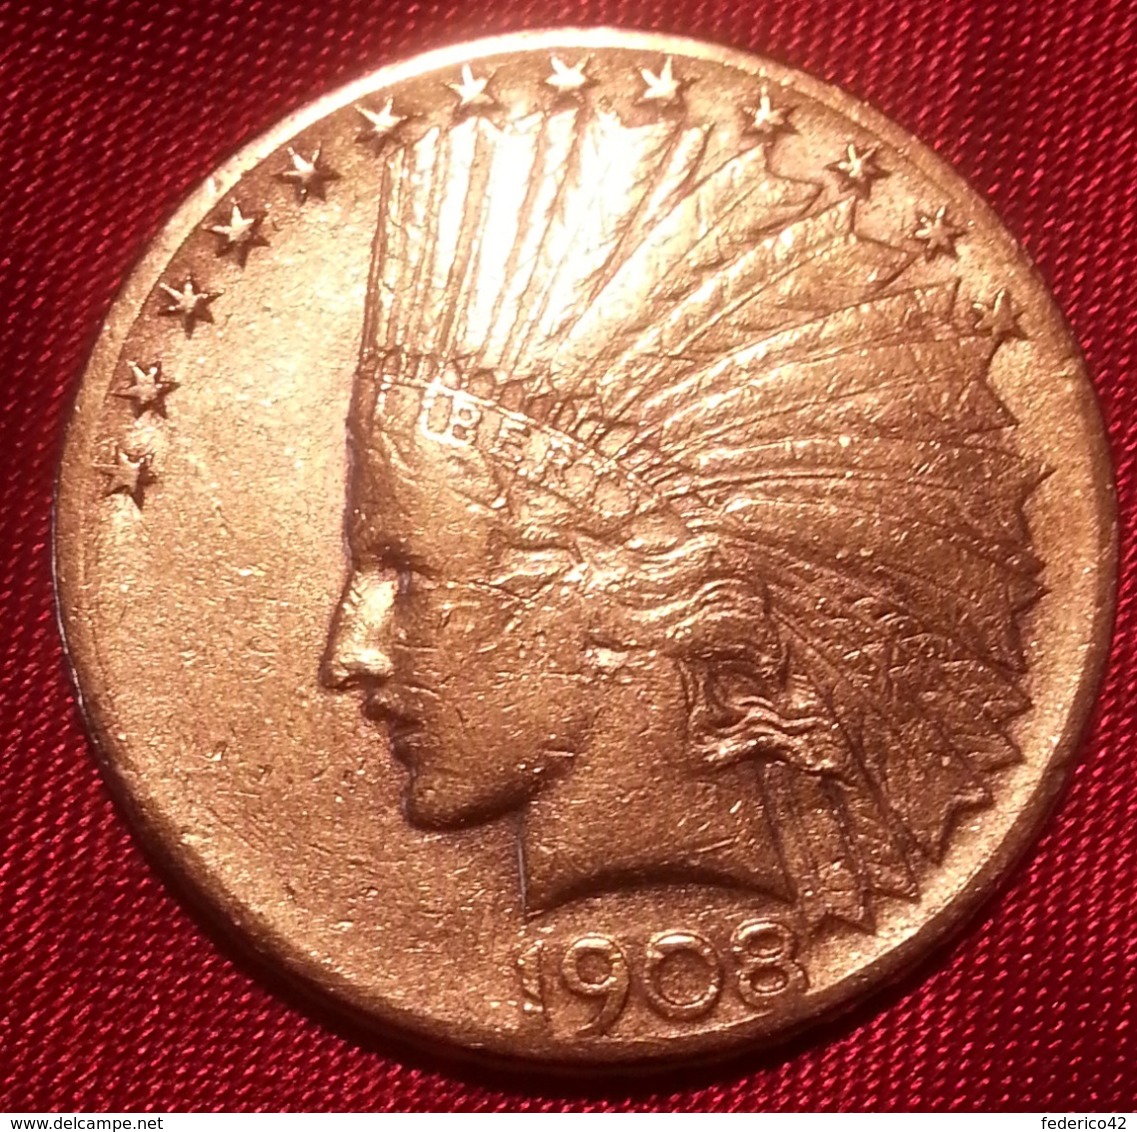 ORO STATI UNITI AMERICA RARO 10 DOLLARI INDIANO 1908 SEGNO DI ZECCA "S"  SPL - 10$ - Eagles - 1907-1933: Indian Head